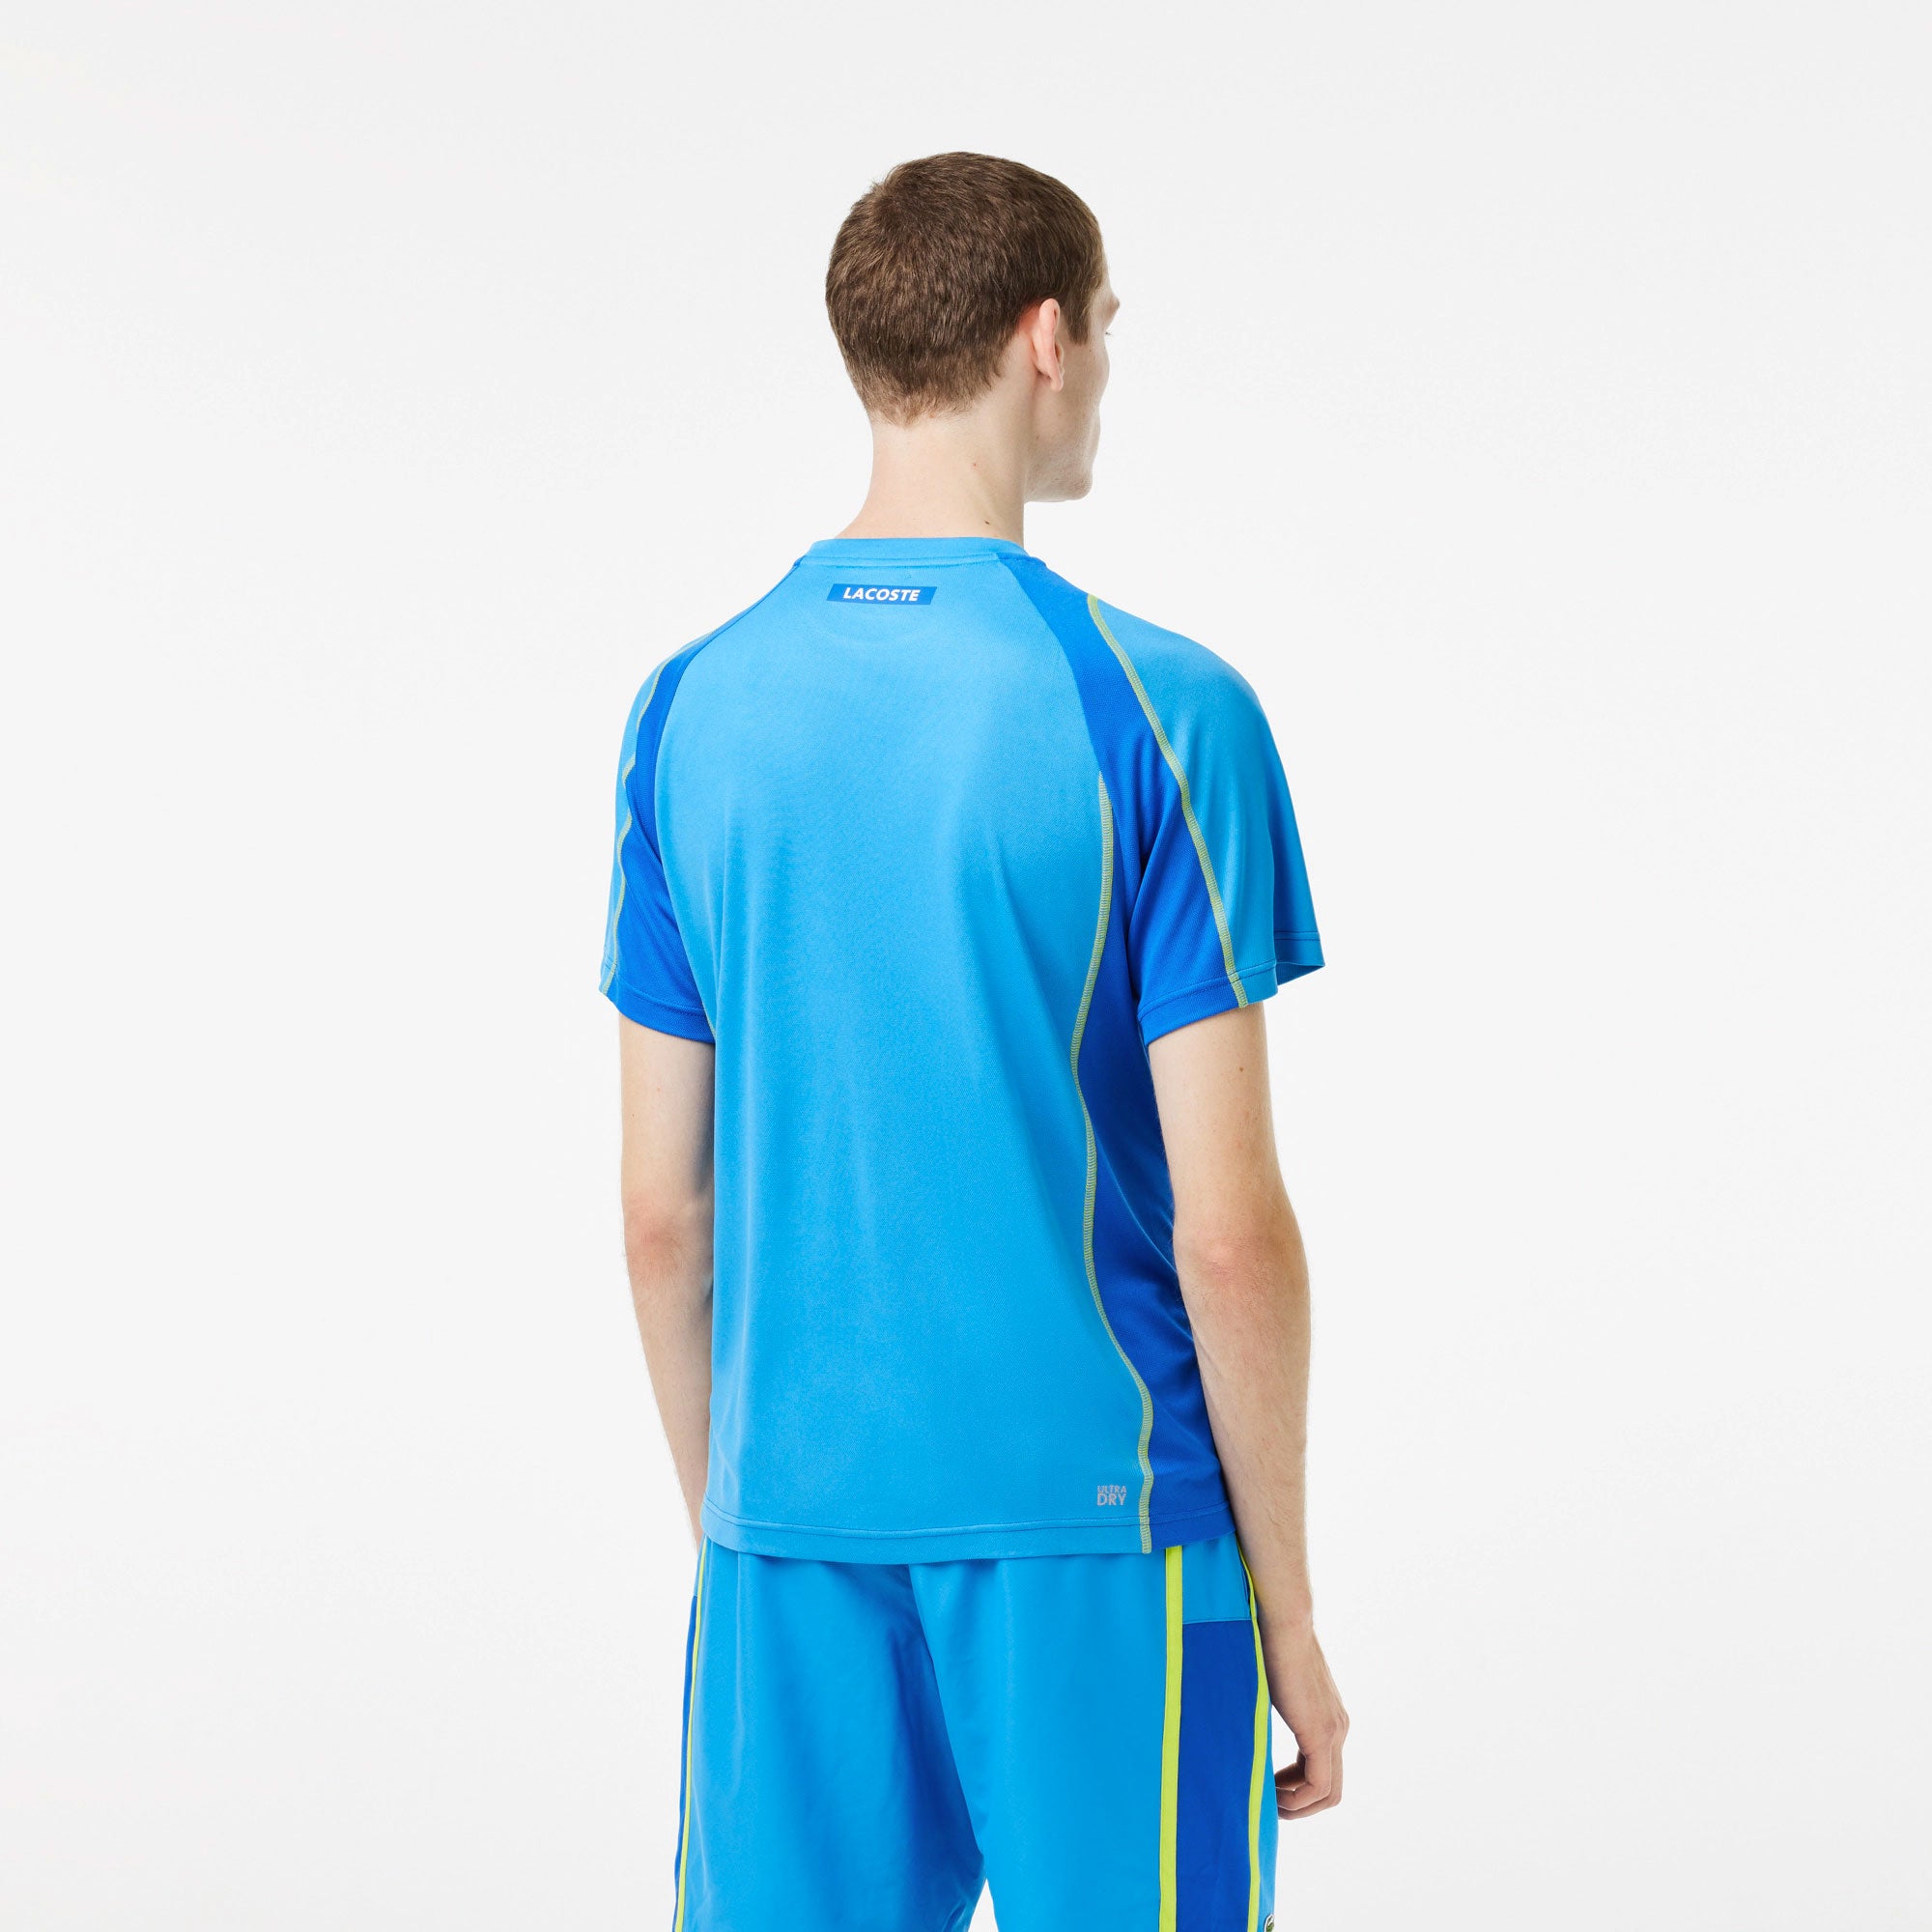 Lacoste Ultra Dry Men's Pique Tennis Shirt Blue (2)